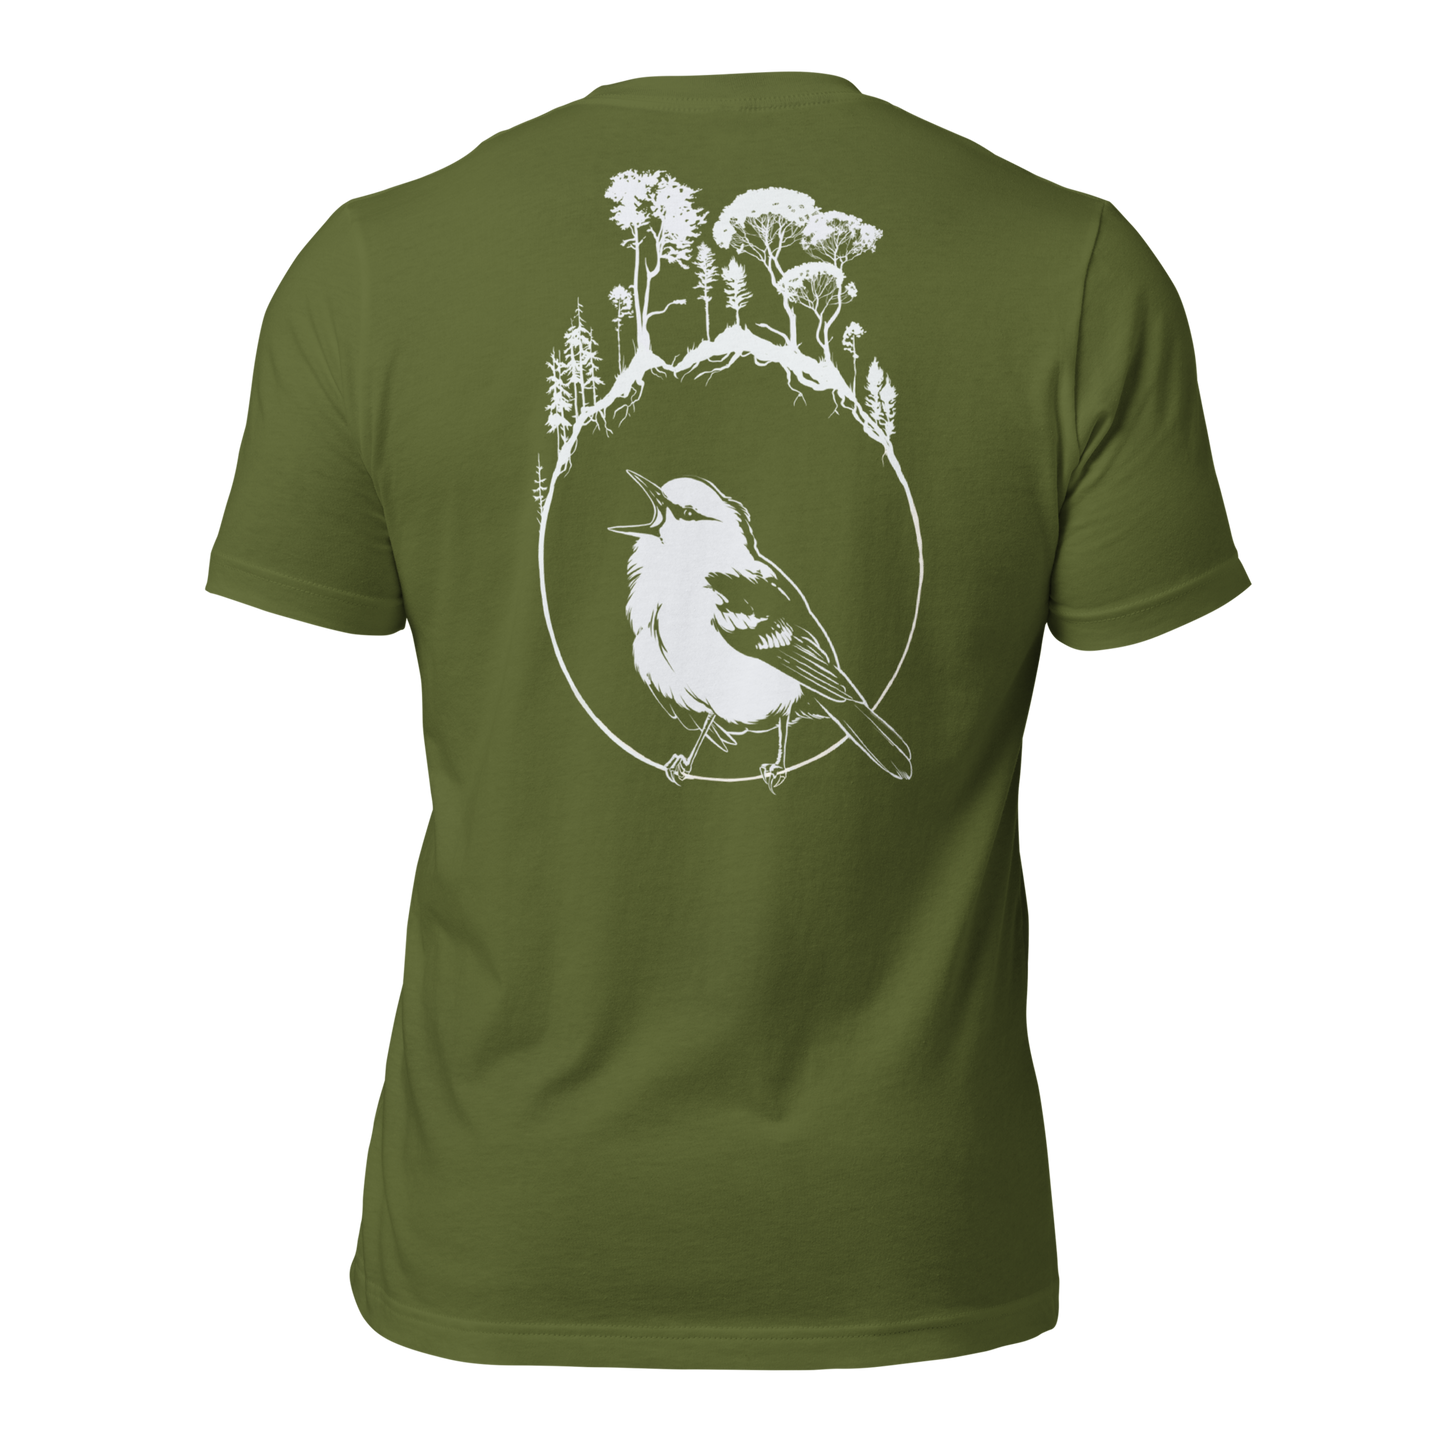 Birding t-shirt